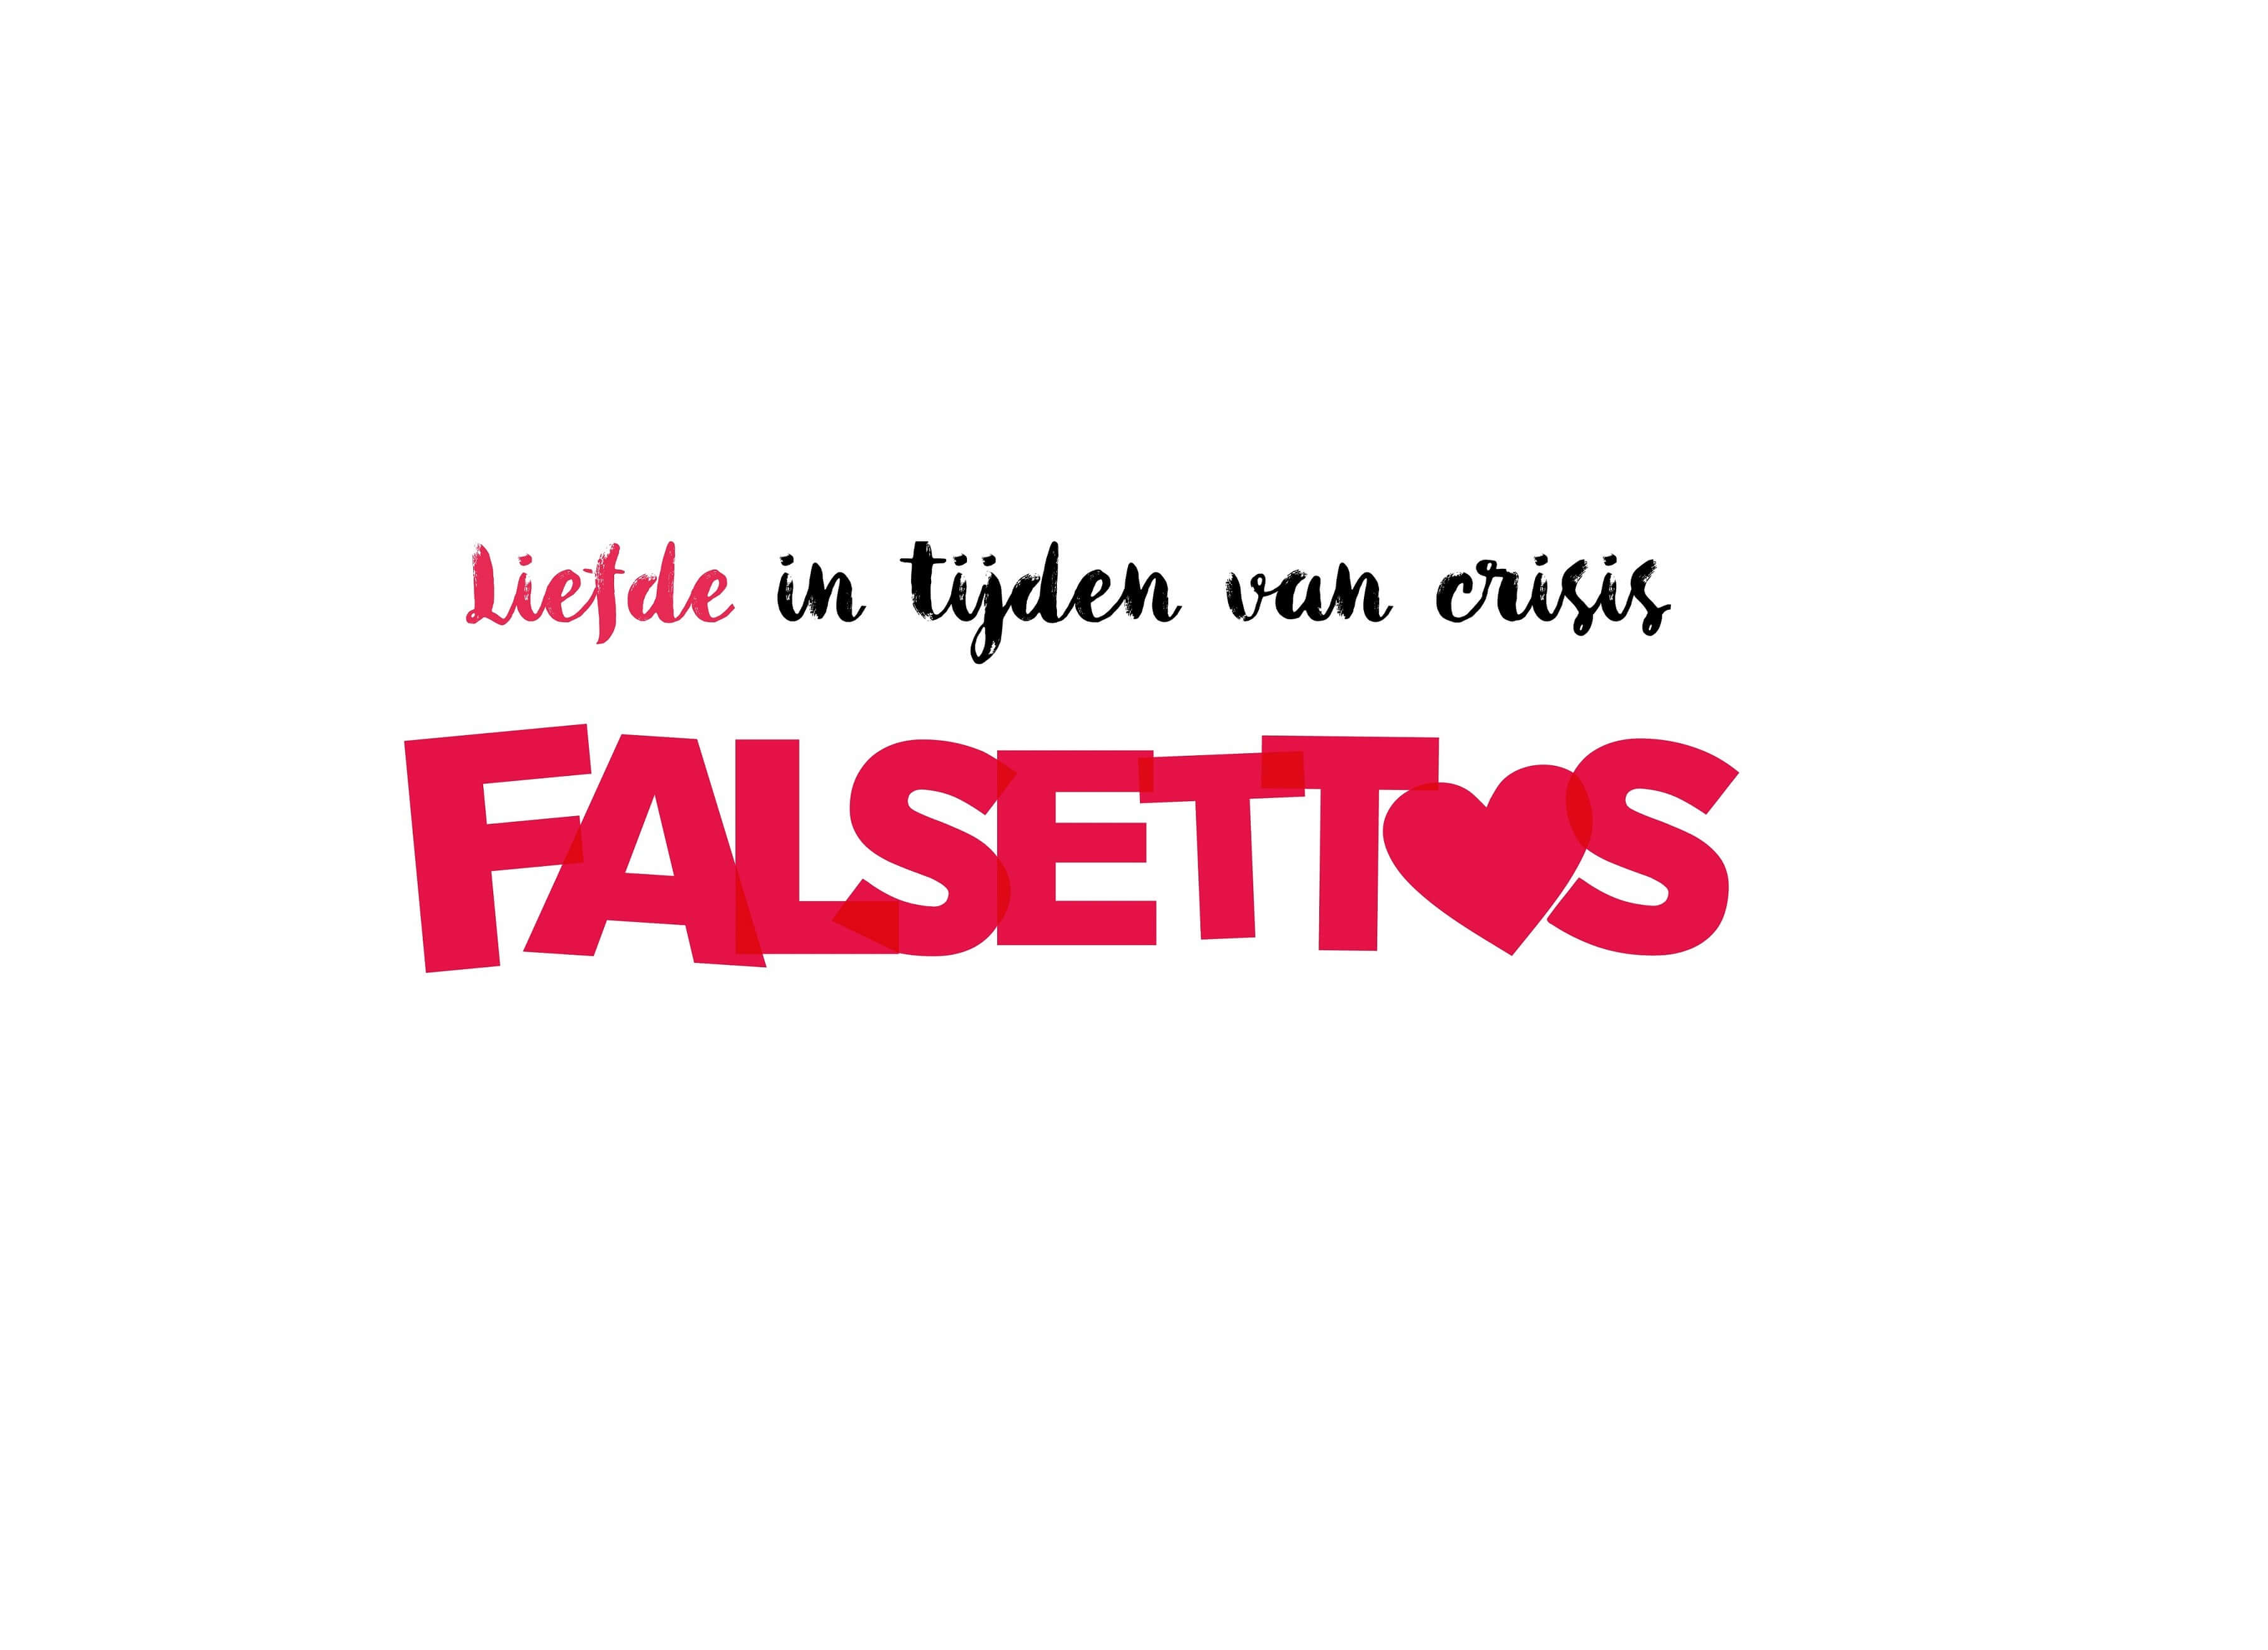 Falsettos logo